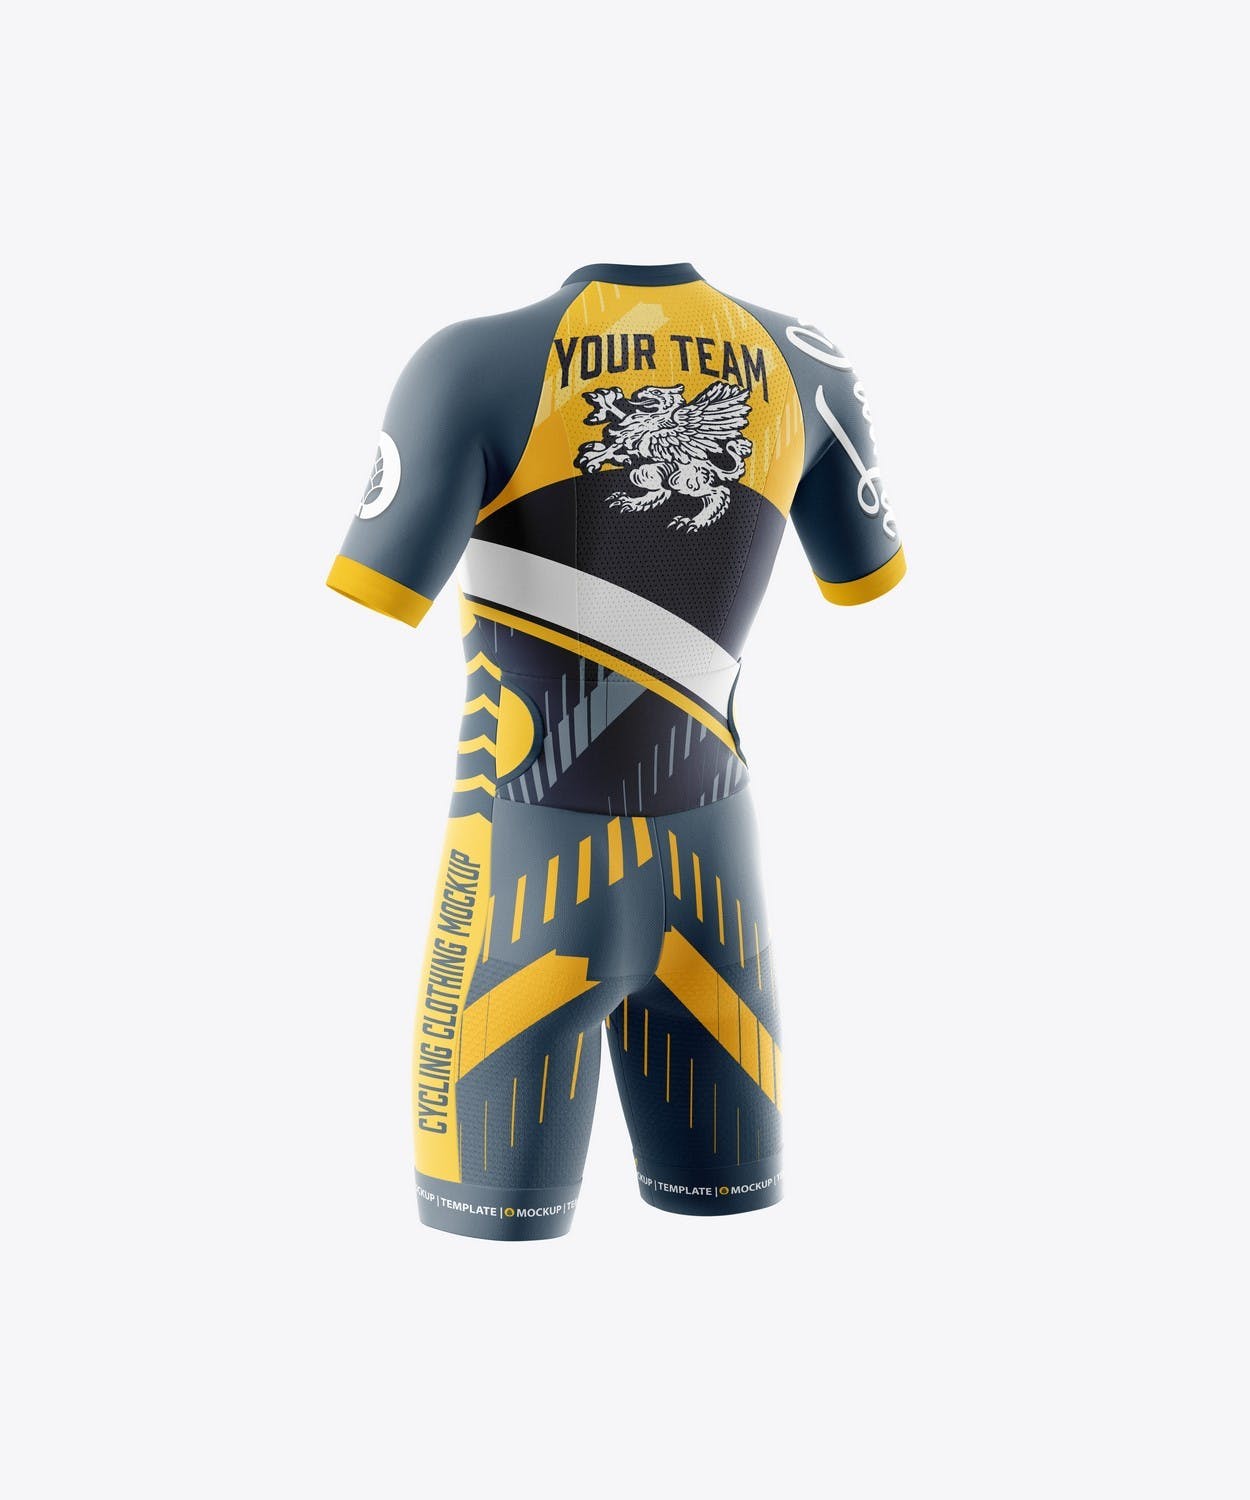 男子运动套装自行车服装品牌设计样机 Sport Cycling Suit for Men Mockup 样机素材 第10张